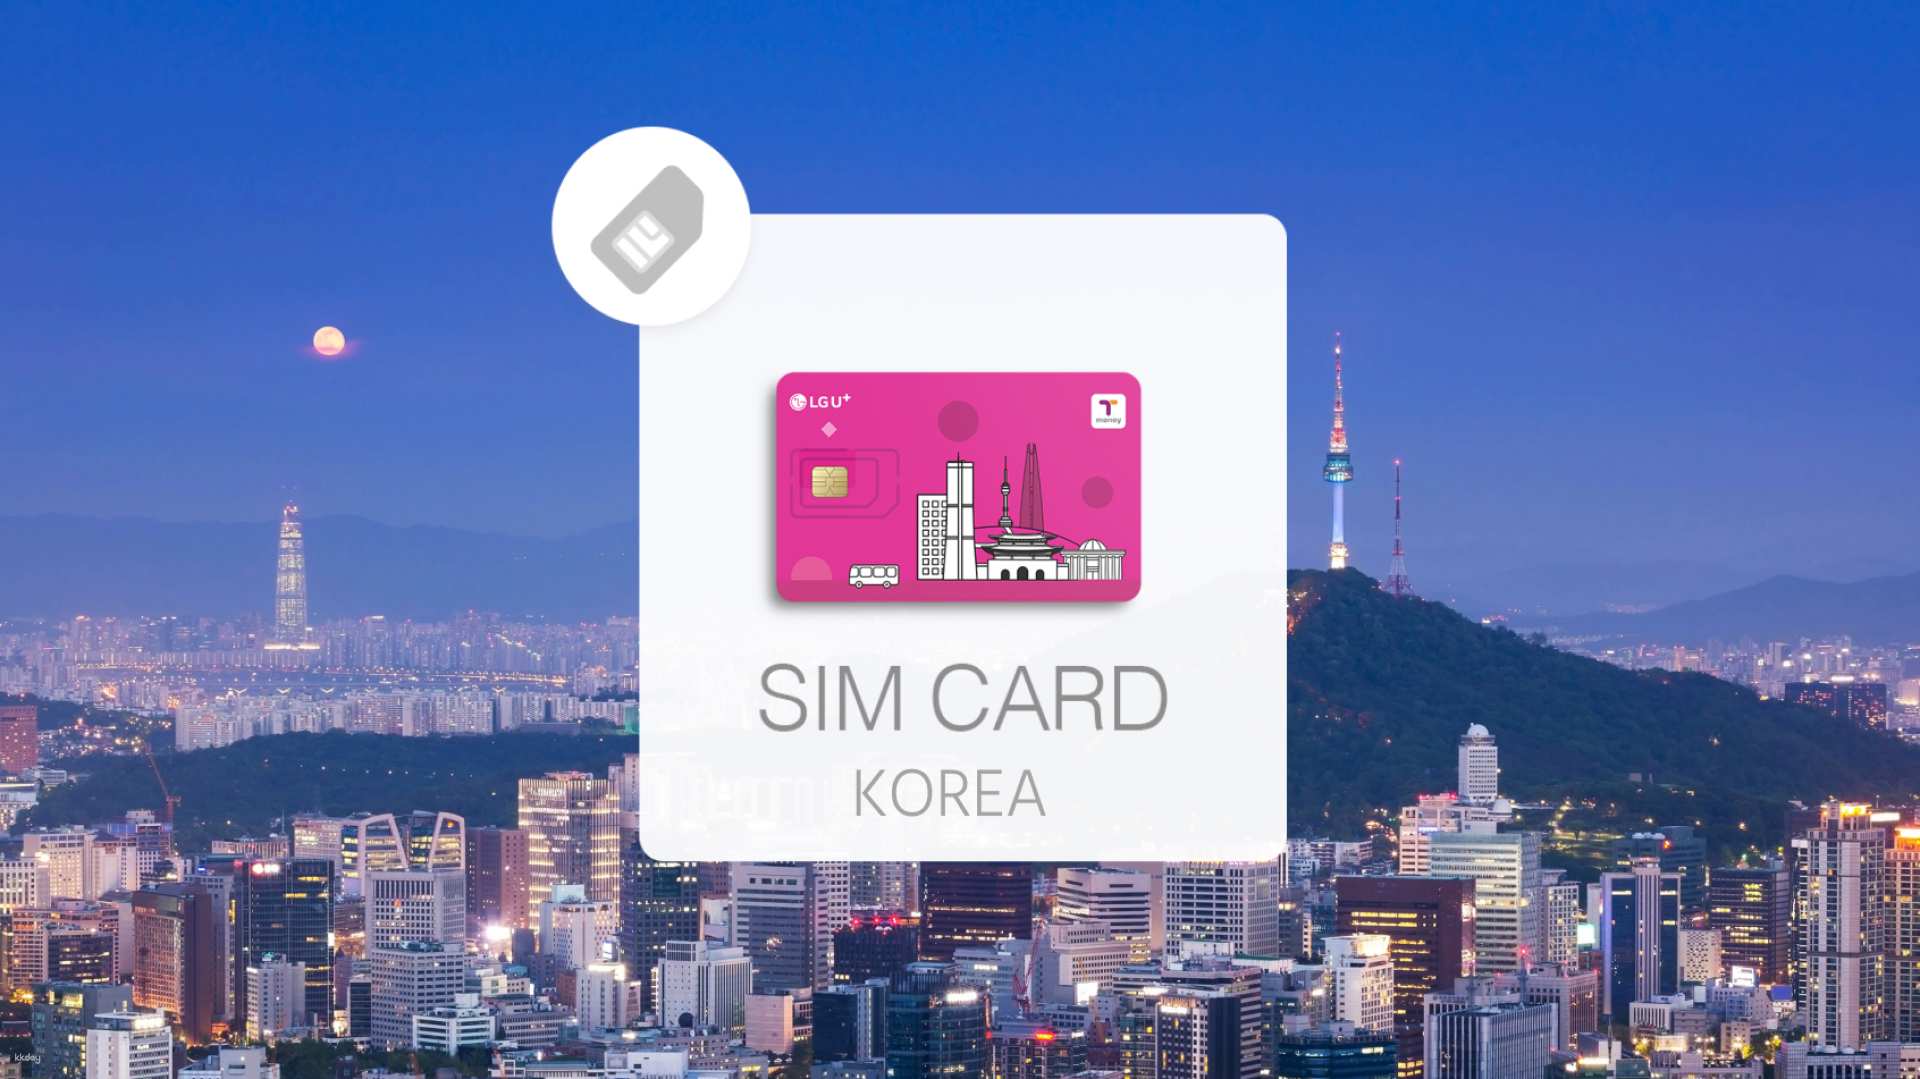 韓國- LG U+網卡(含T-Money功能)&語音通話| 韓國機場領取